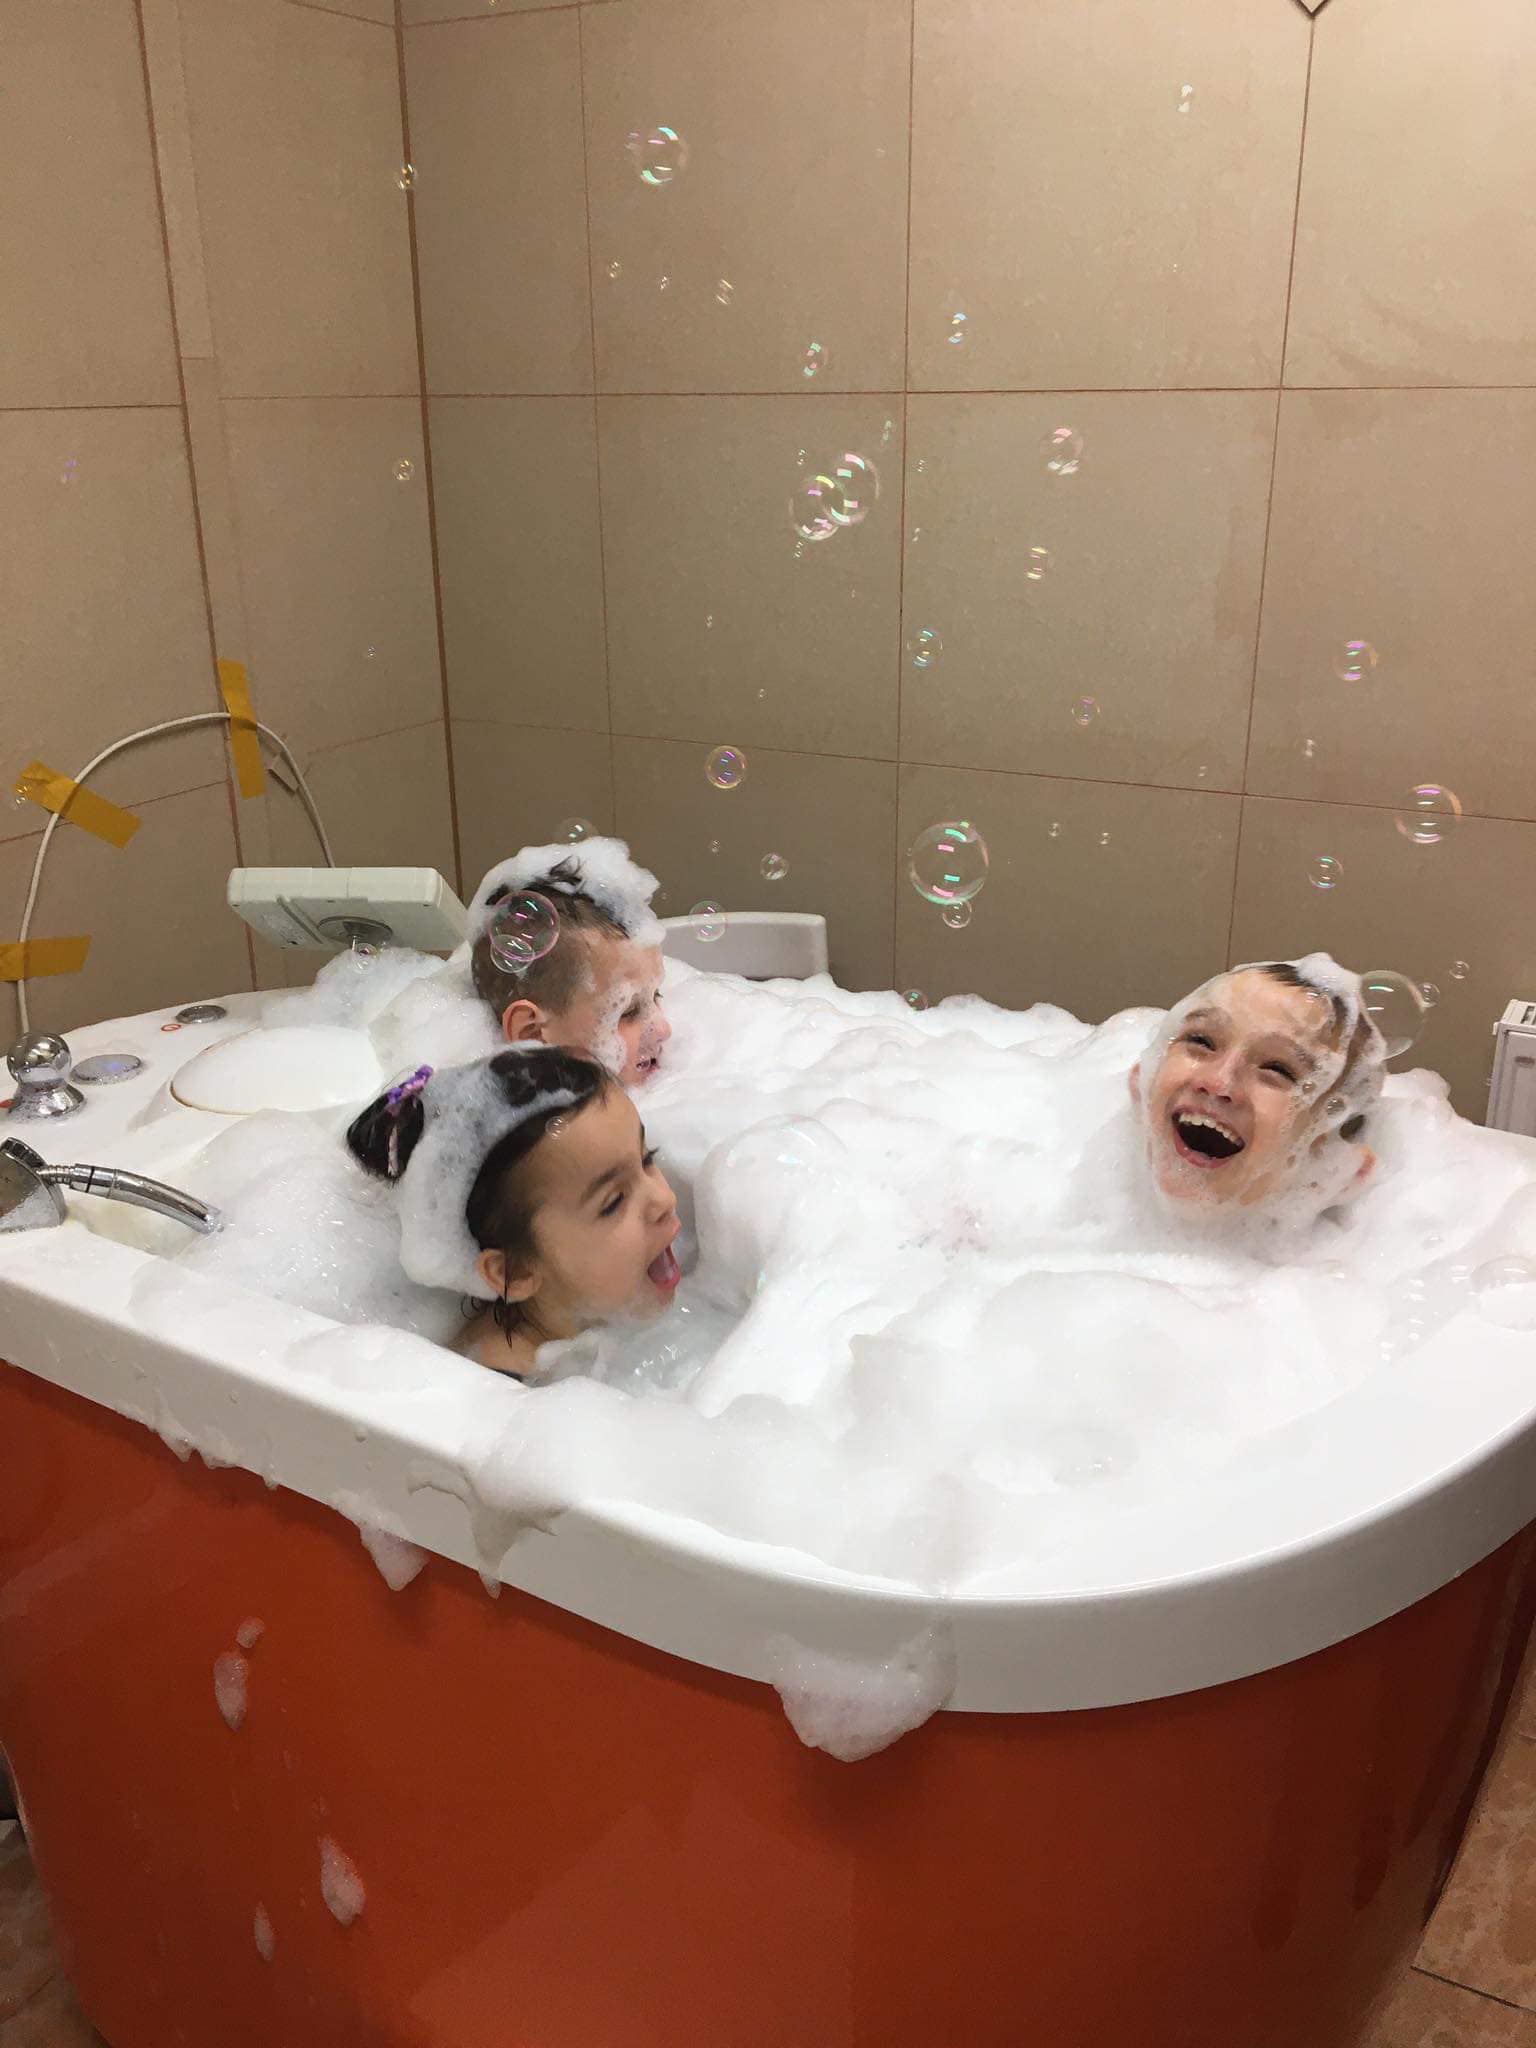 Dzieci kąpią się w wannie pełnej piany aby uczcić dzień piany, sprawia im to bardzo dużo radości